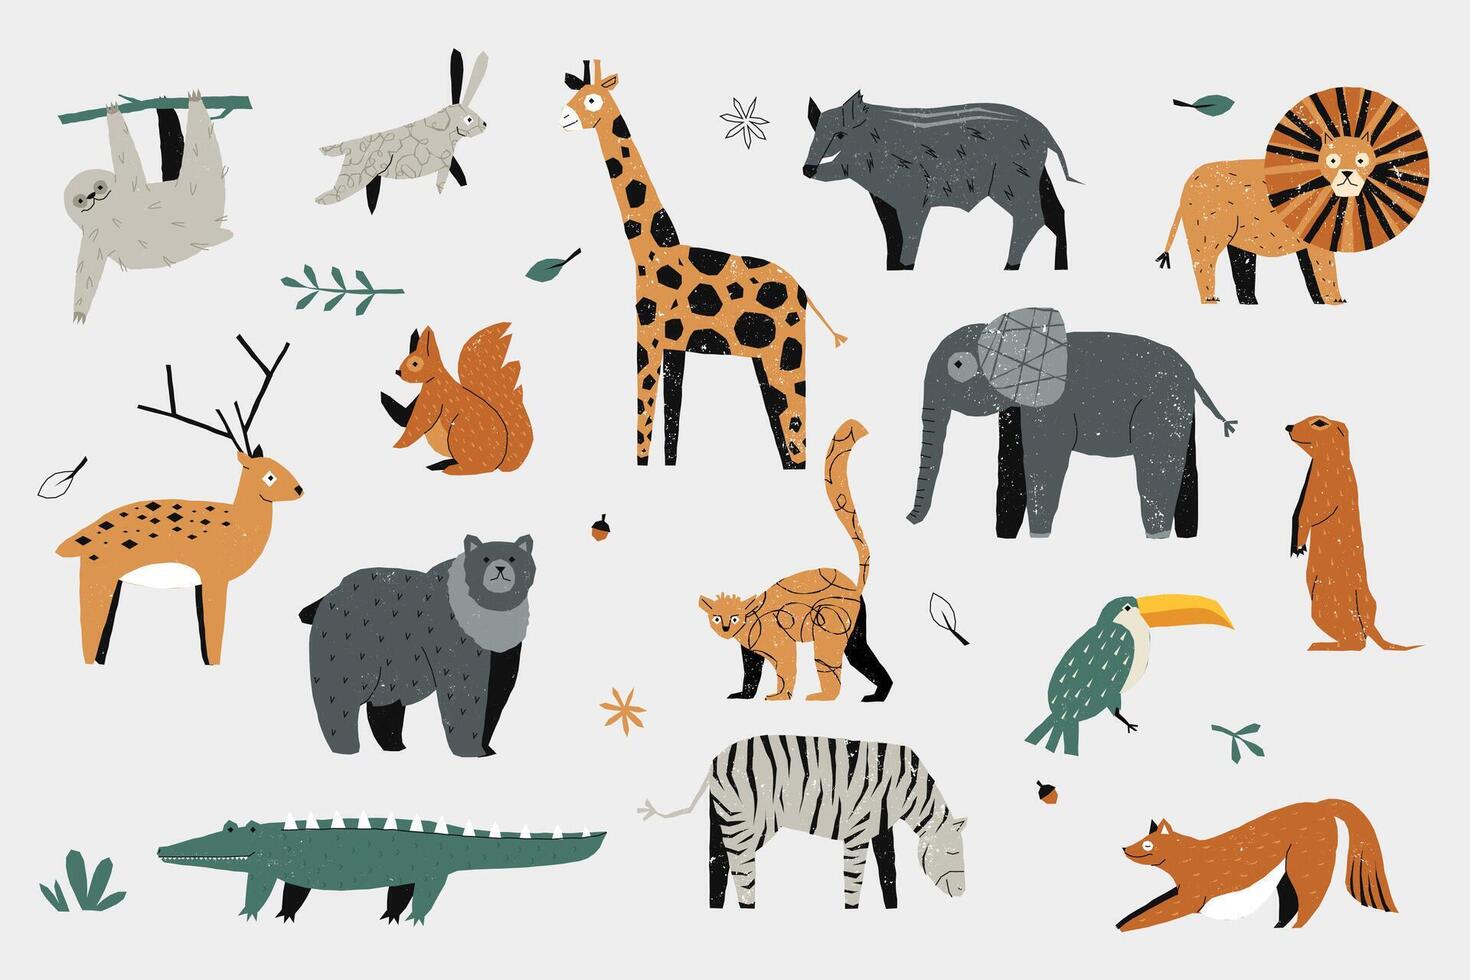 linda de moda animales vistoso mano dibujado bebé zoo fauna silvestre, decorativo dibujos animados jirafa león elefante cebra hipopótamo cocodrilo para niños diseño. vector aislado conjunto